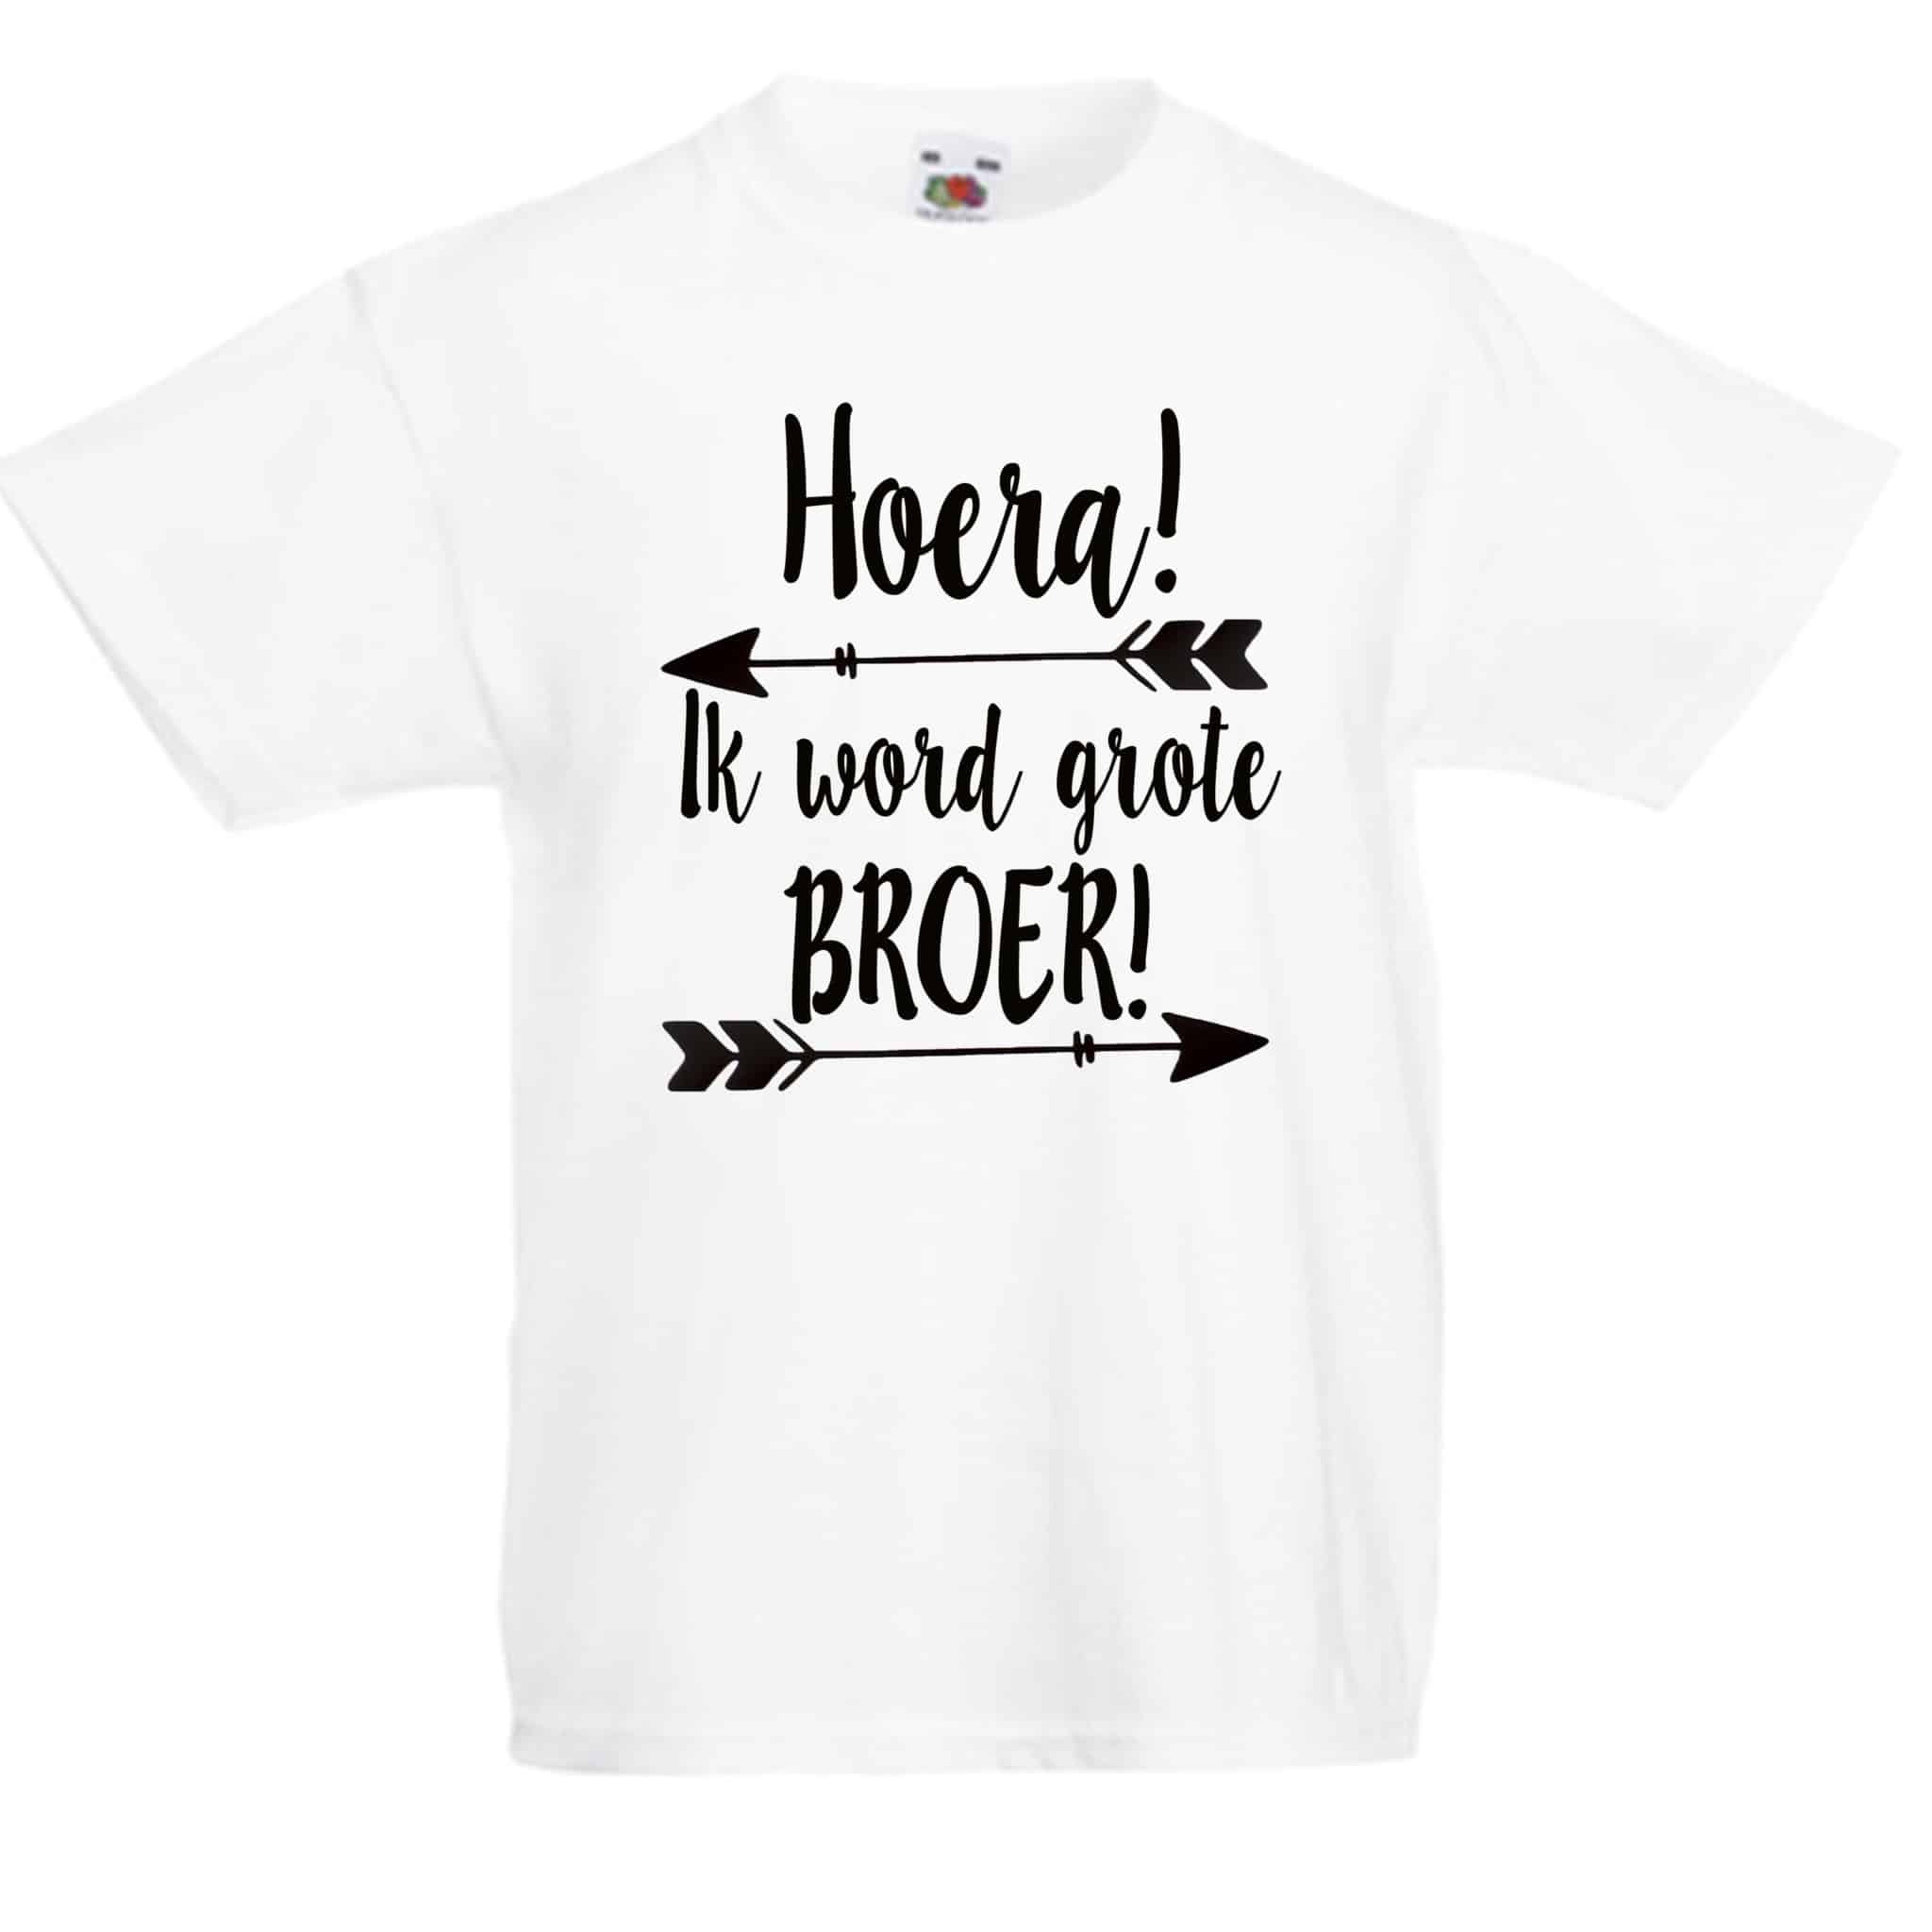 Wonderbaarlijk Grote broer t-shirt kopen? - Zwanger? Lieve Labels.nl YT-02